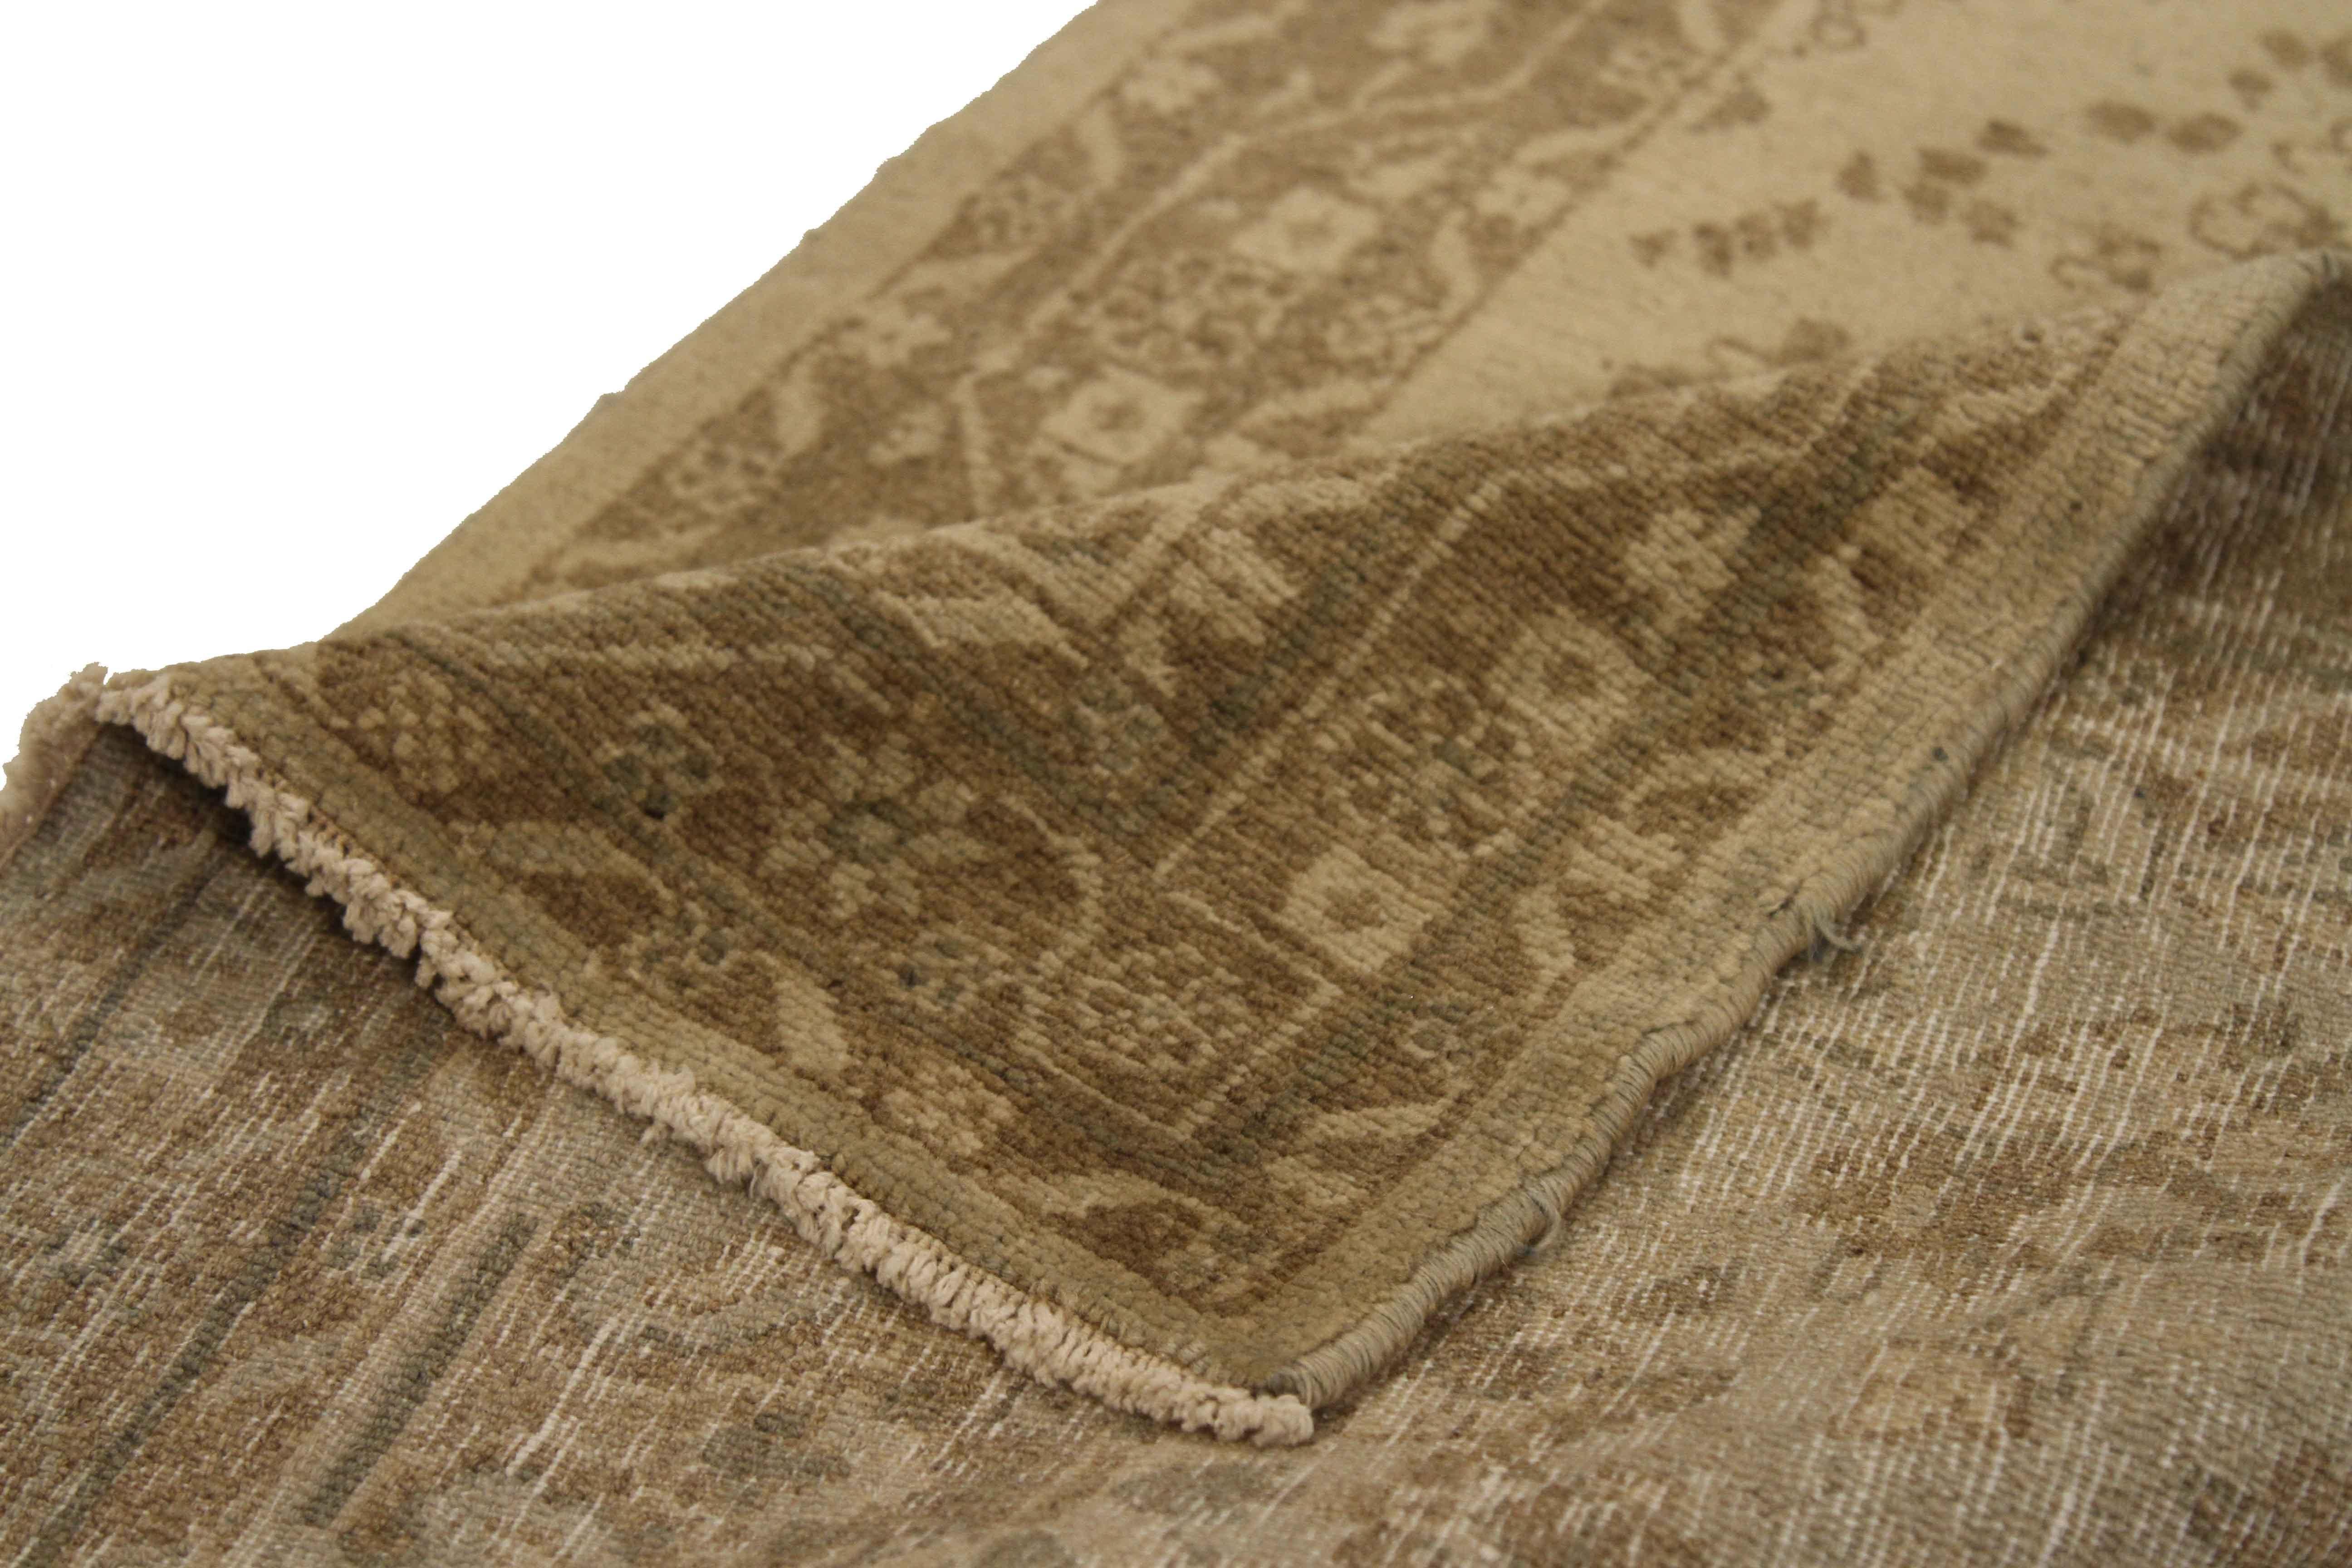 Tapis persan ancien tissé à la main en laine organique de haute qualité, dont la surface exquise est recouverte de motifs traditionnels des tapis de Hamadan. Il est coloré en or, ivoire et vert à partir de teinture végétale naturelle. C'est une